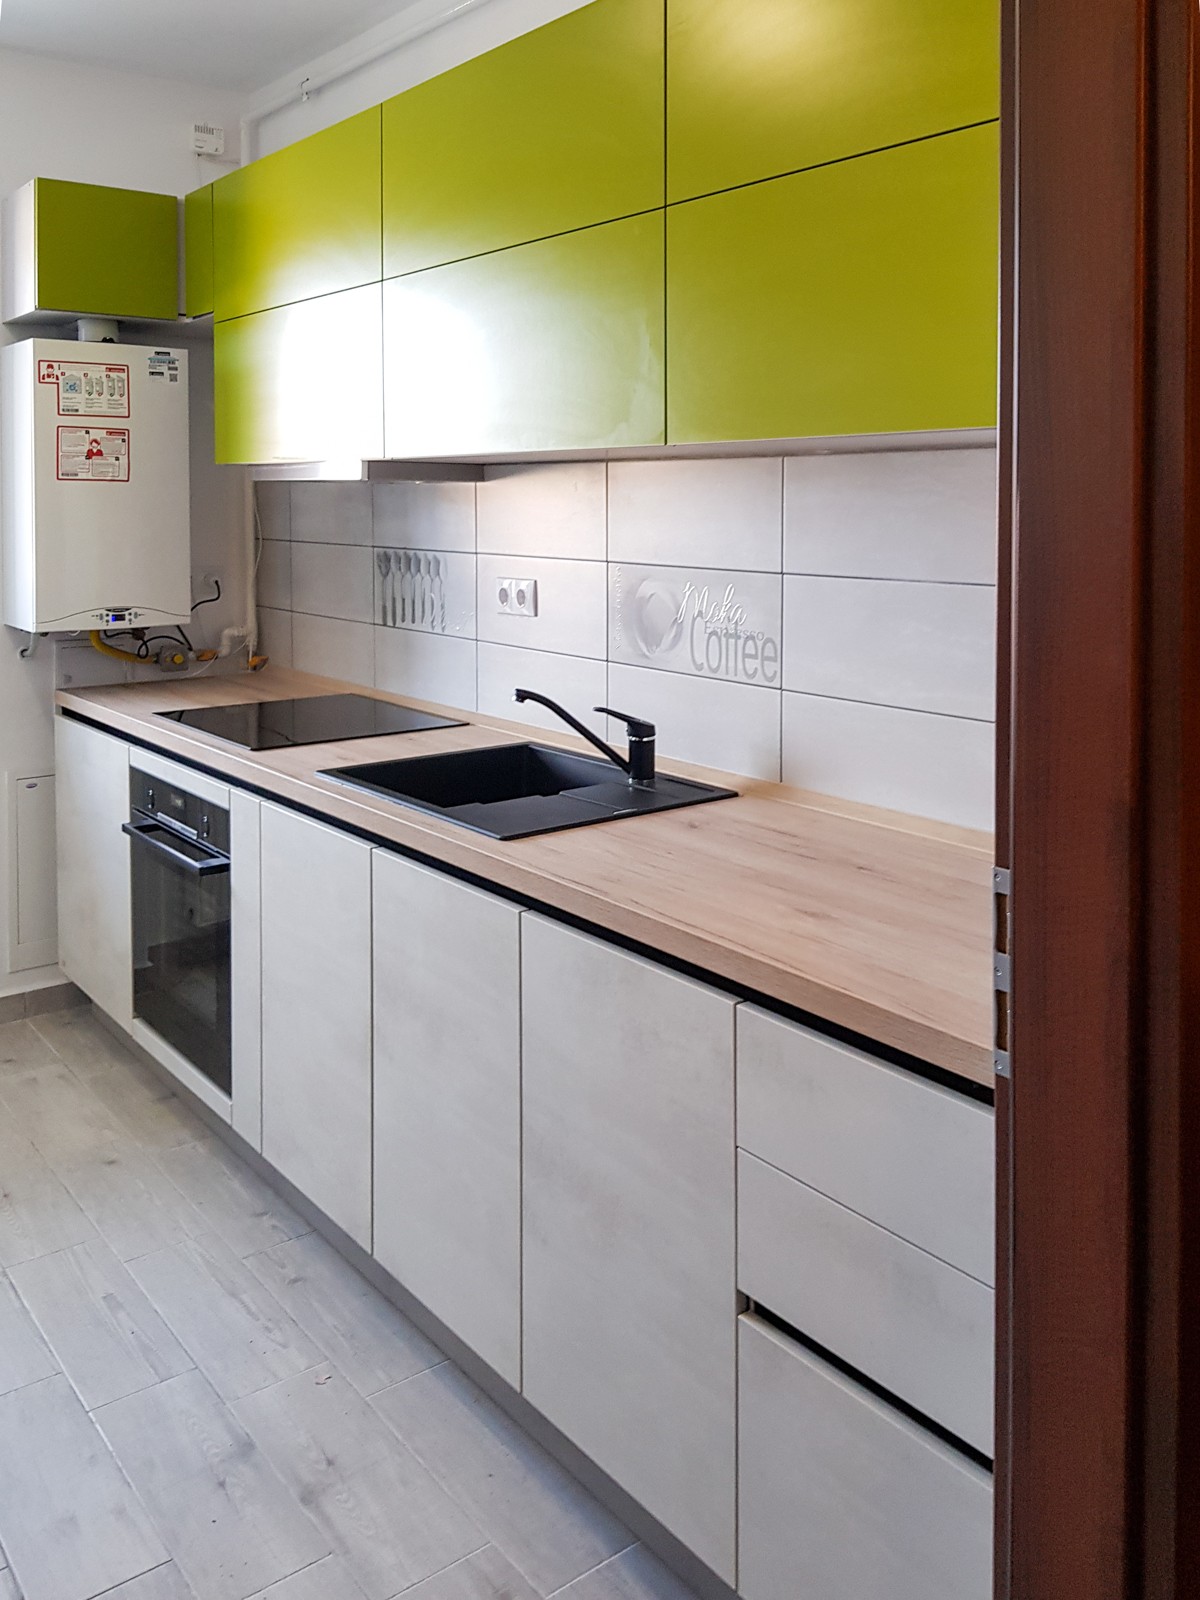 Referință - Bucătărie modernă Kuechentreff Riva - Beton alb / Verde ferigă 